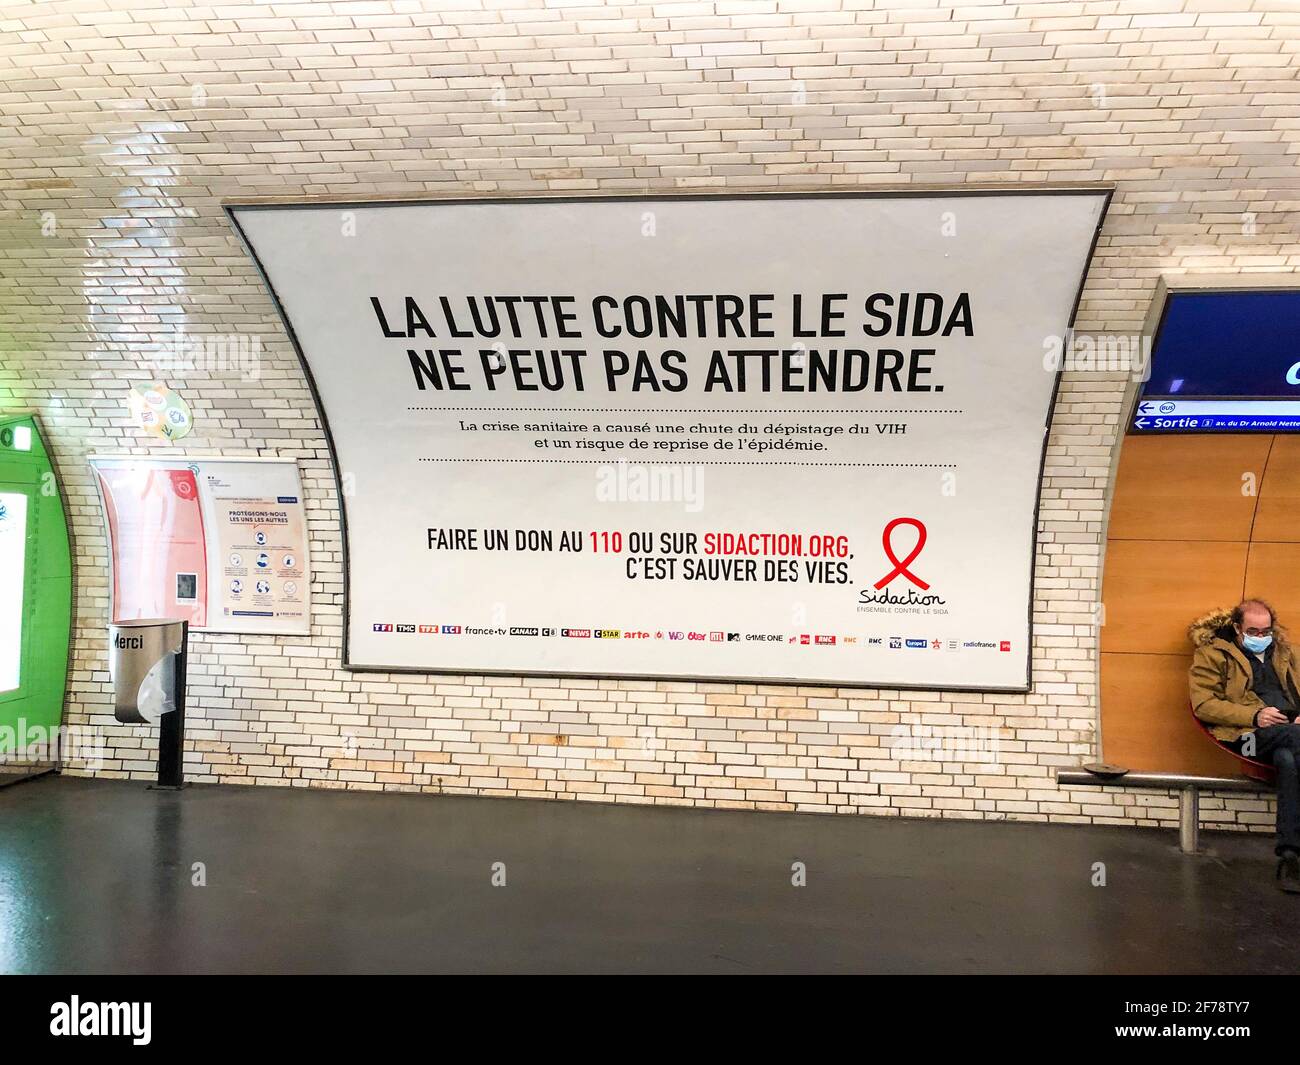 Paris, France, Paris Metro, campagne publicitaire française, ONG SIDA,Affiche Sidaction à l'intérieur du mur de la station de métro, panneau d'affichage Paris, affiche annonçant le métro Banque D'Images